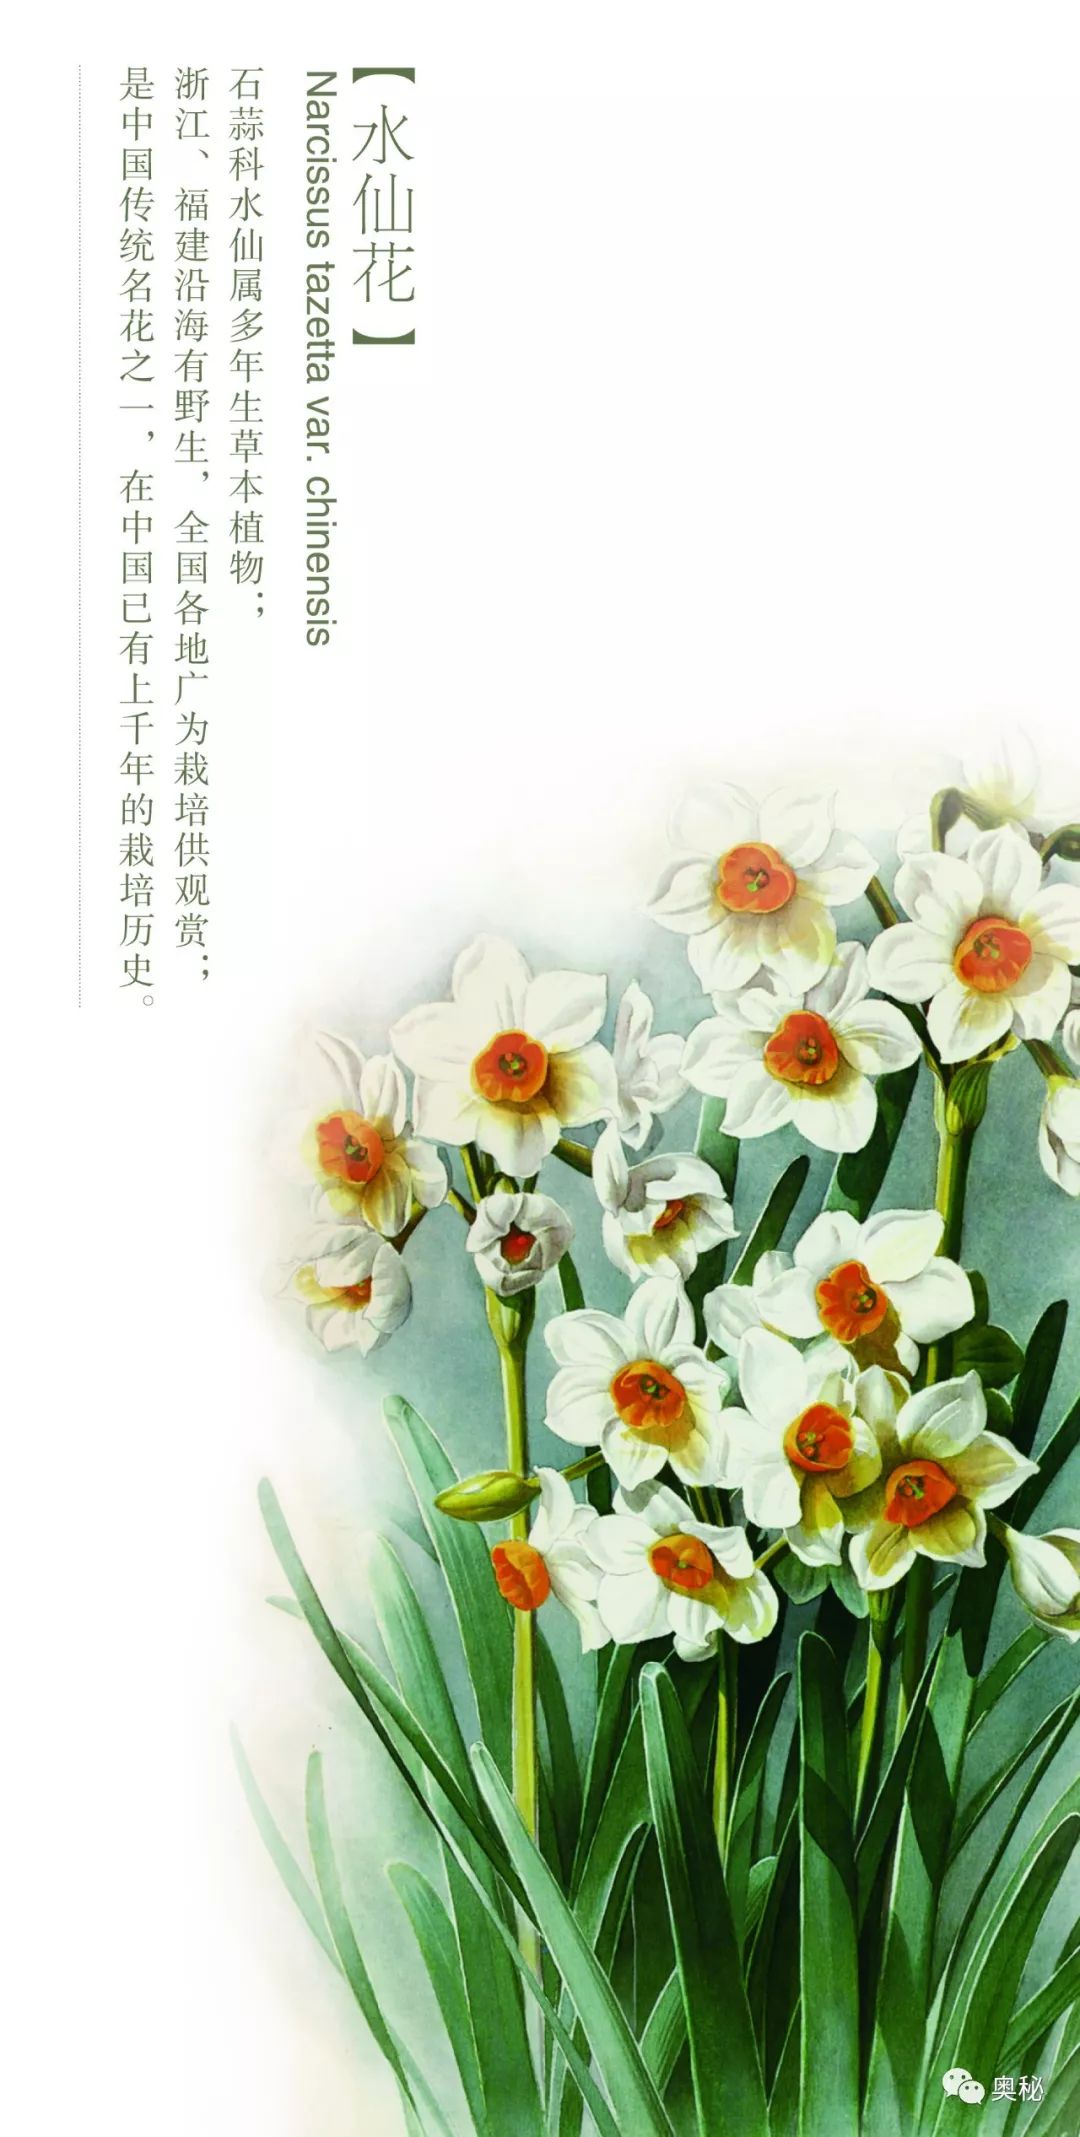 水仙花的资料卡图片